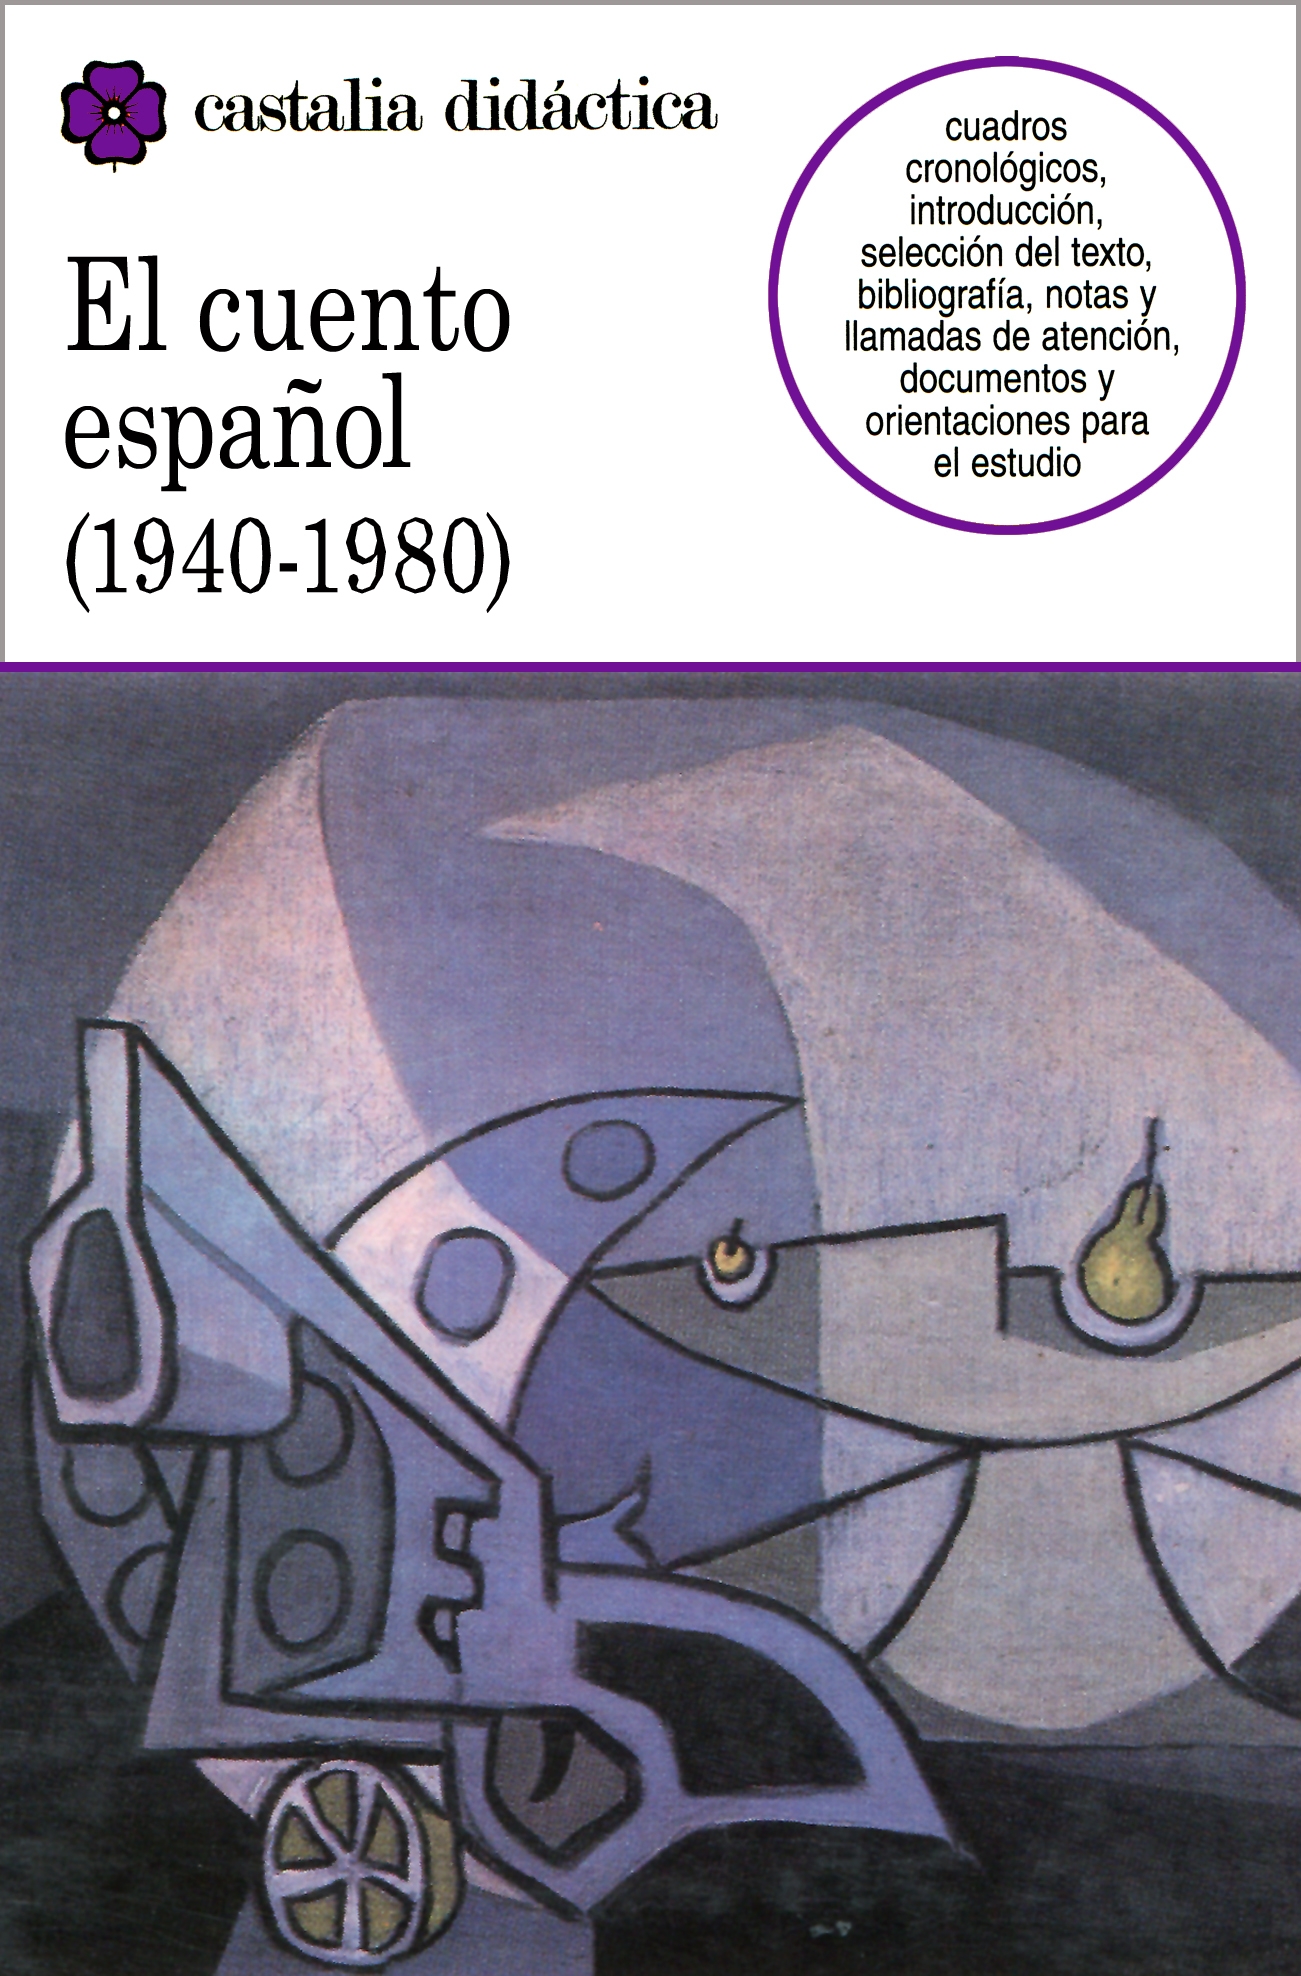 Antología de la poesía española (1939-1975)